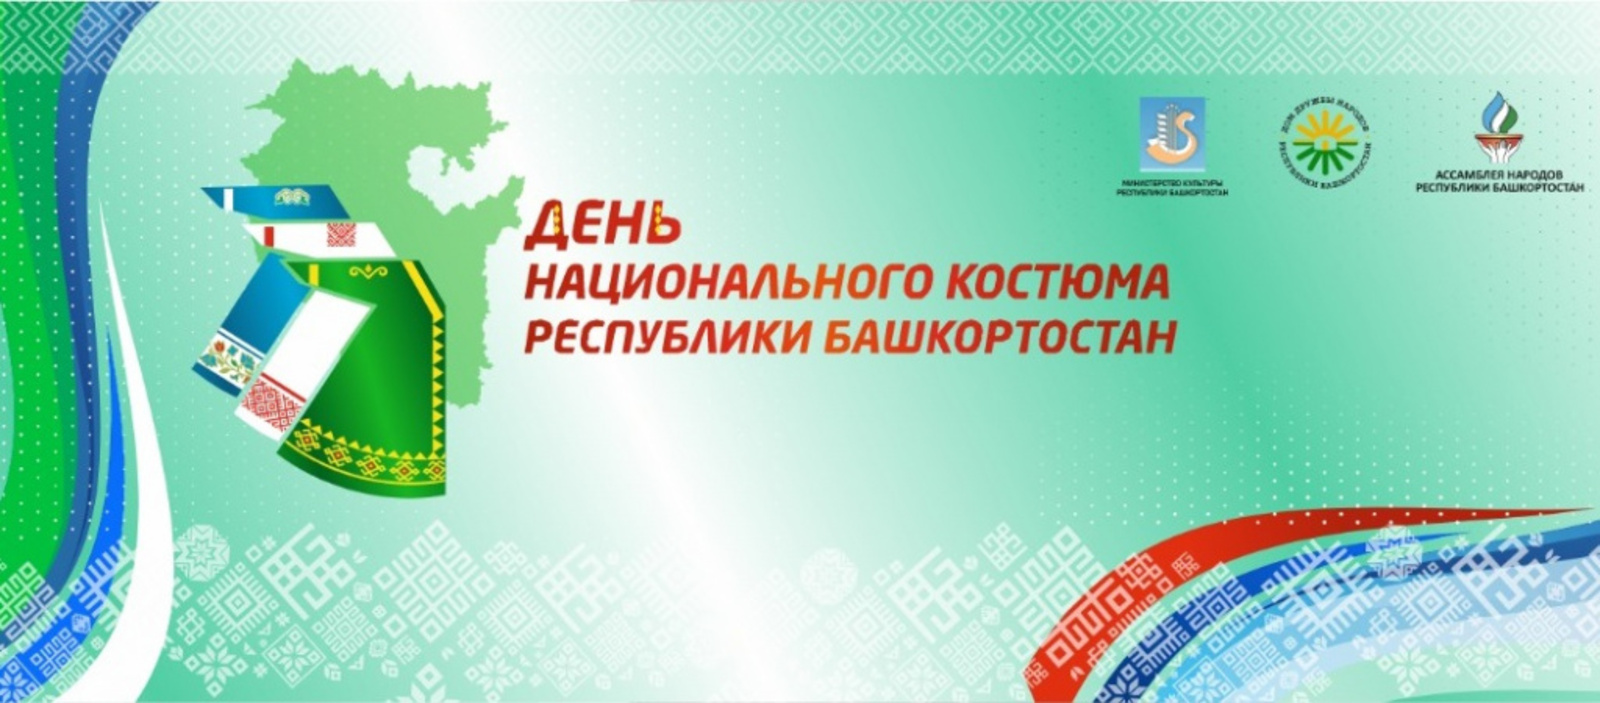 В Башкортостане пройдет День национального костюма